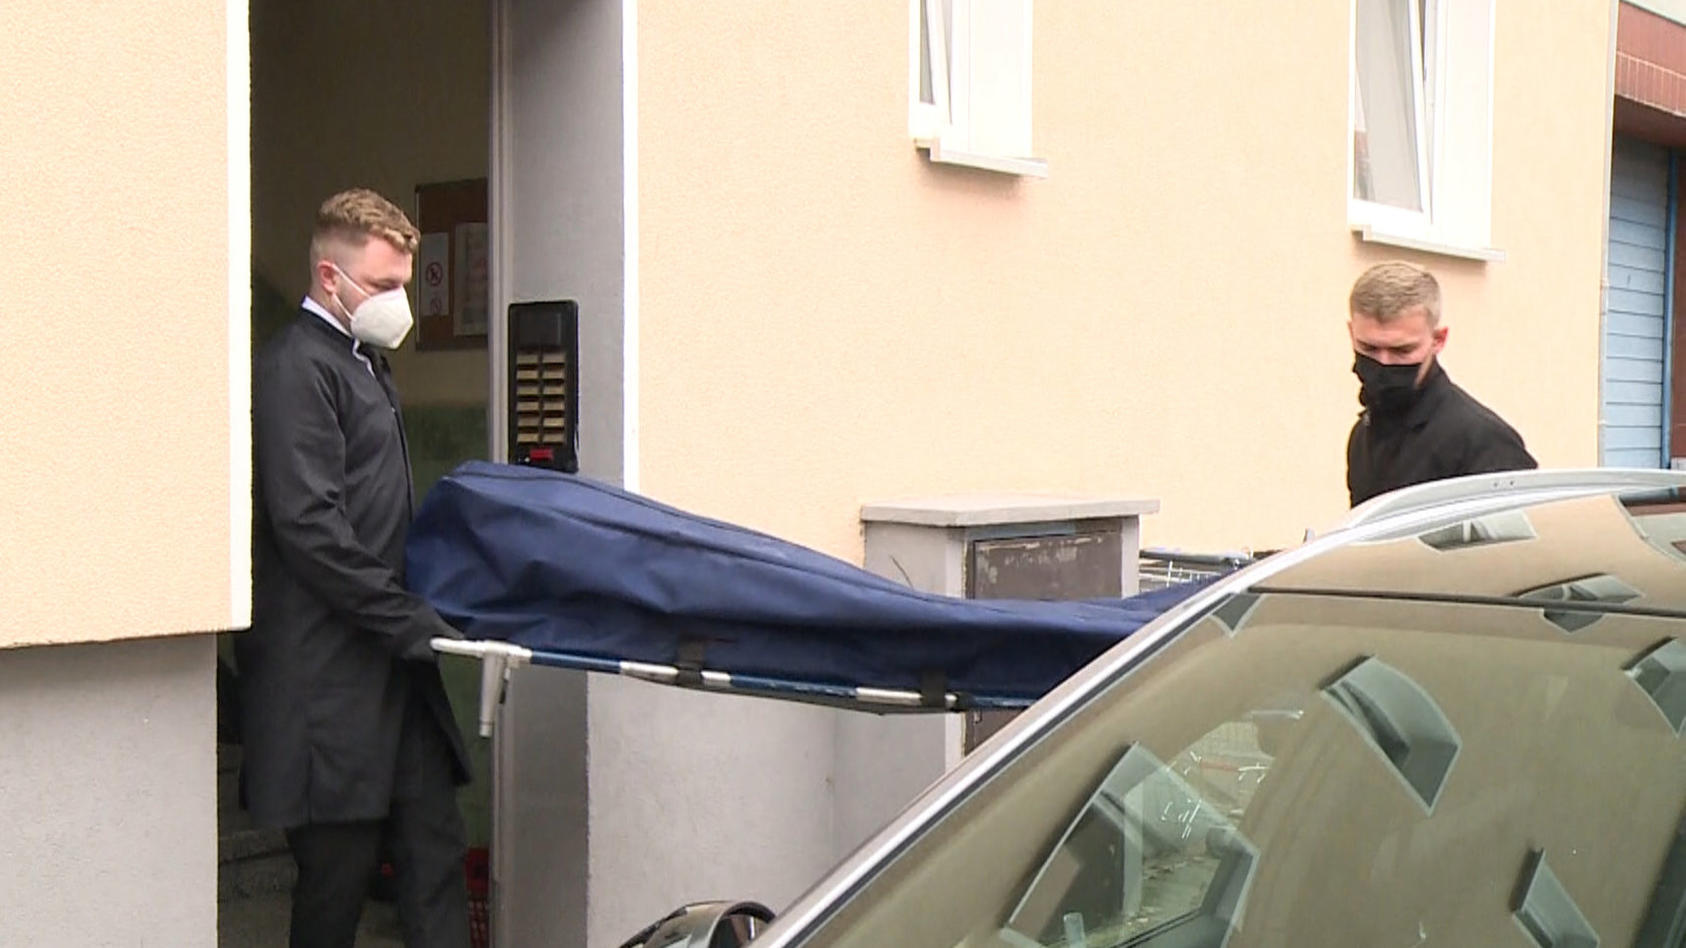 20.09.2021, Niedersachsen, Hannover: Bestatter bringen das Opfer zu ihrem Fahrzeug. Eine 53 Jahre alte Sexarbeiterin ist tot in ihrer Wohnung gefunden worden. Ein Nachbar hatte sie am Sonntagabend gefesselt auf dem Boden liegend entdeckt, wie eine Sp